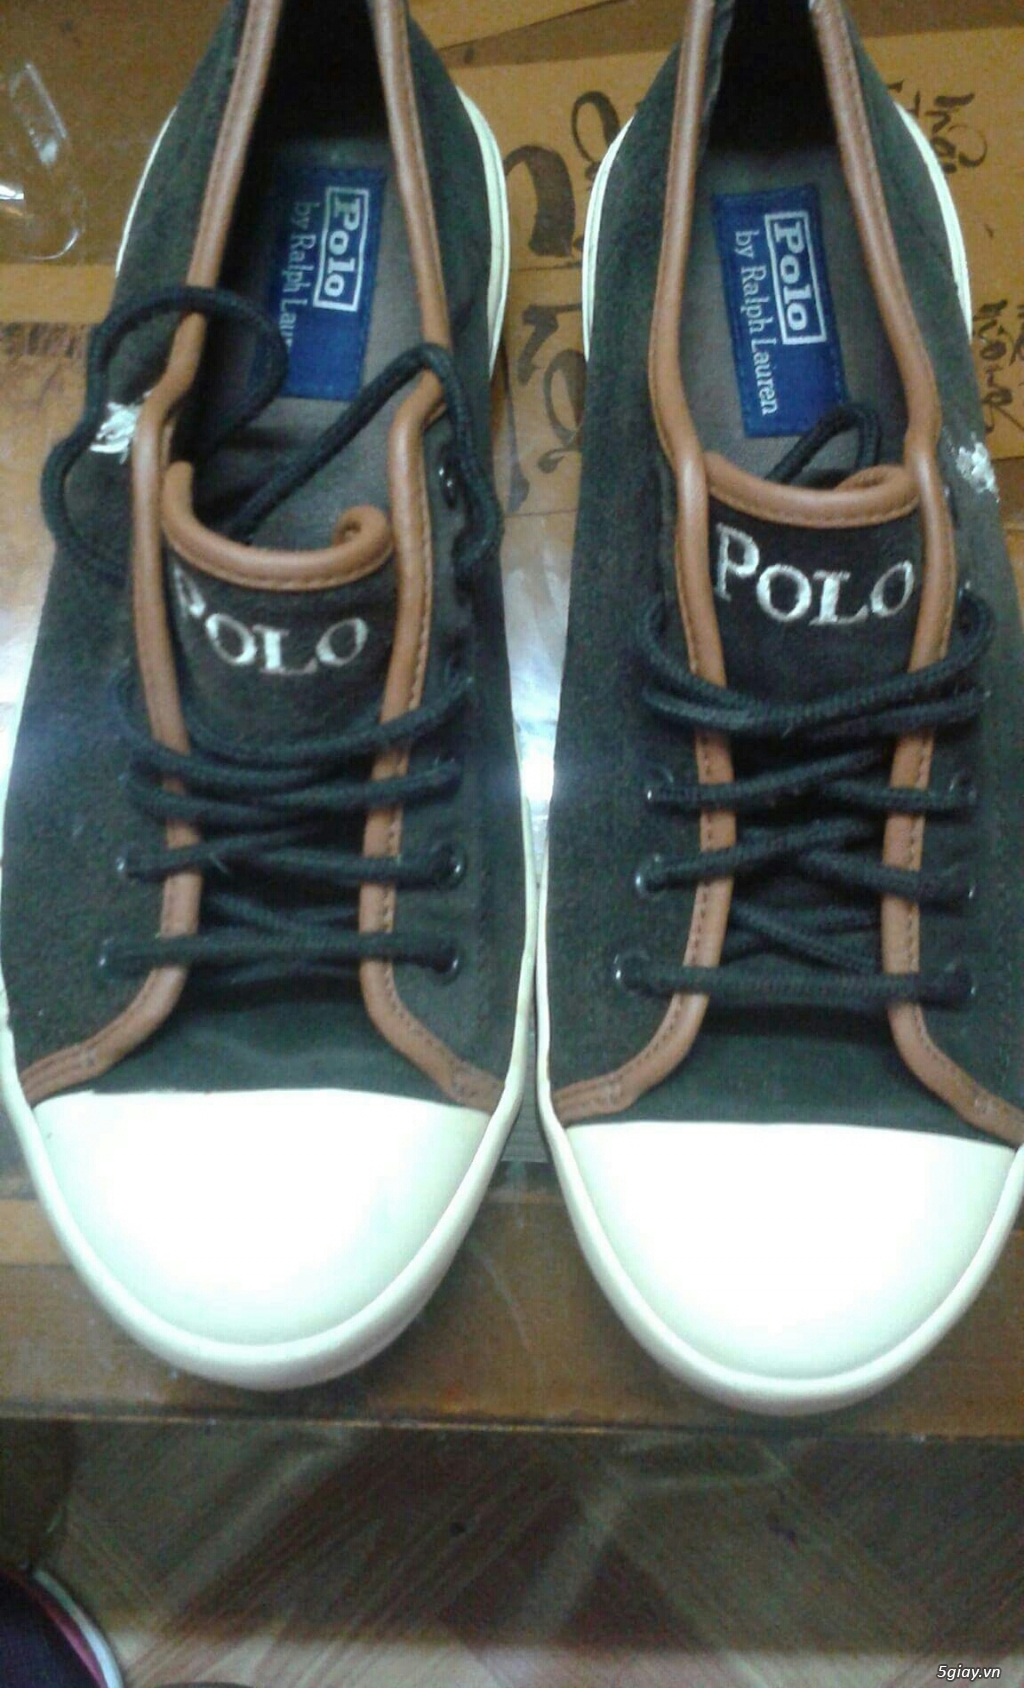 Giày Nam hiệu Polo size 7(40 vn)mua nước ngoài đem về - 2